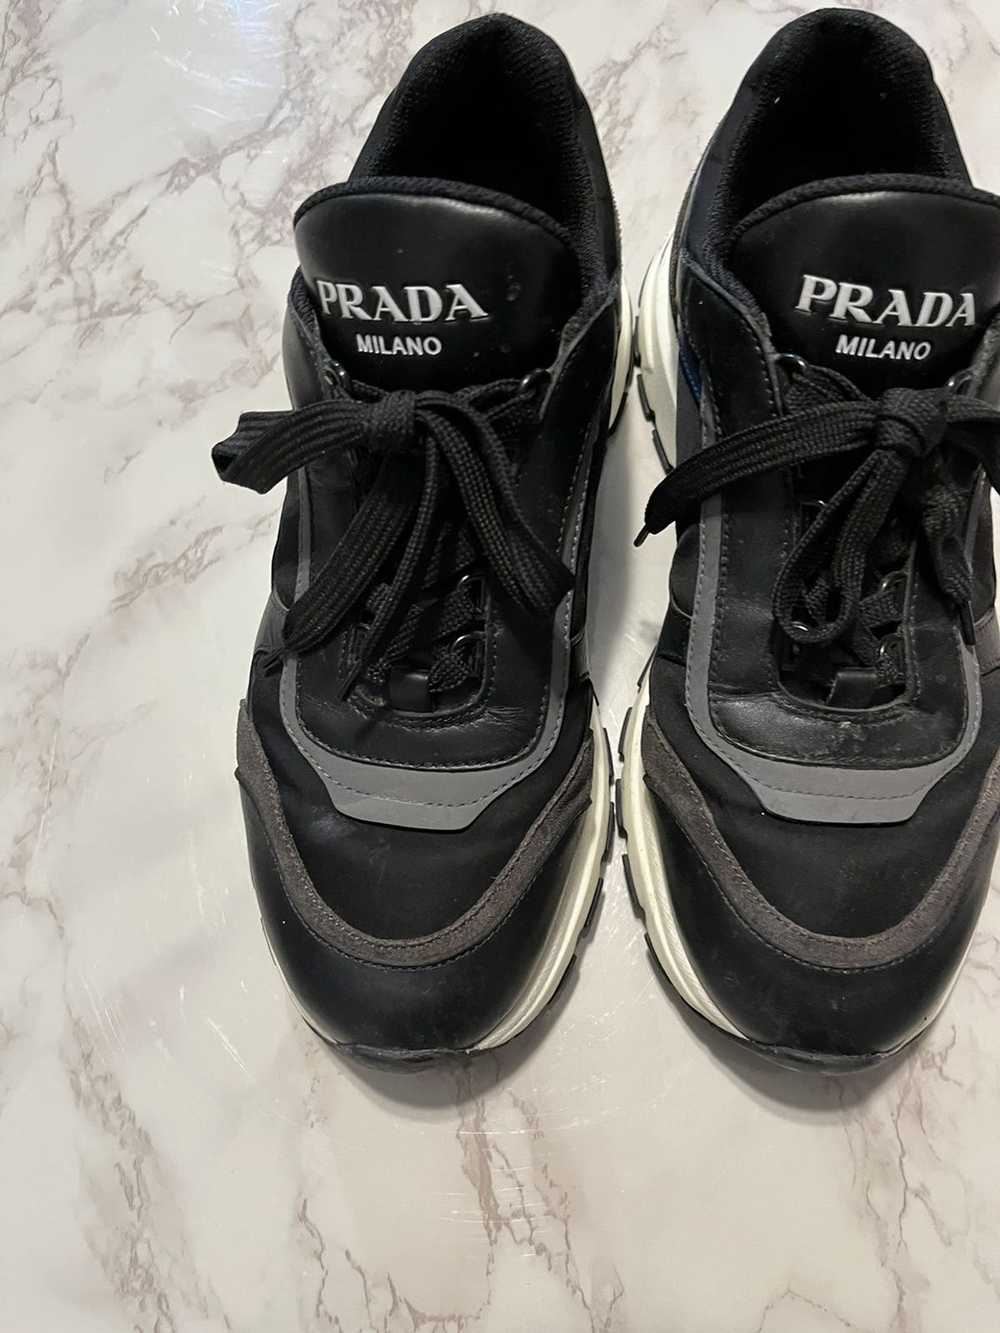 Prada Prada Nylon Sneakers - image 3